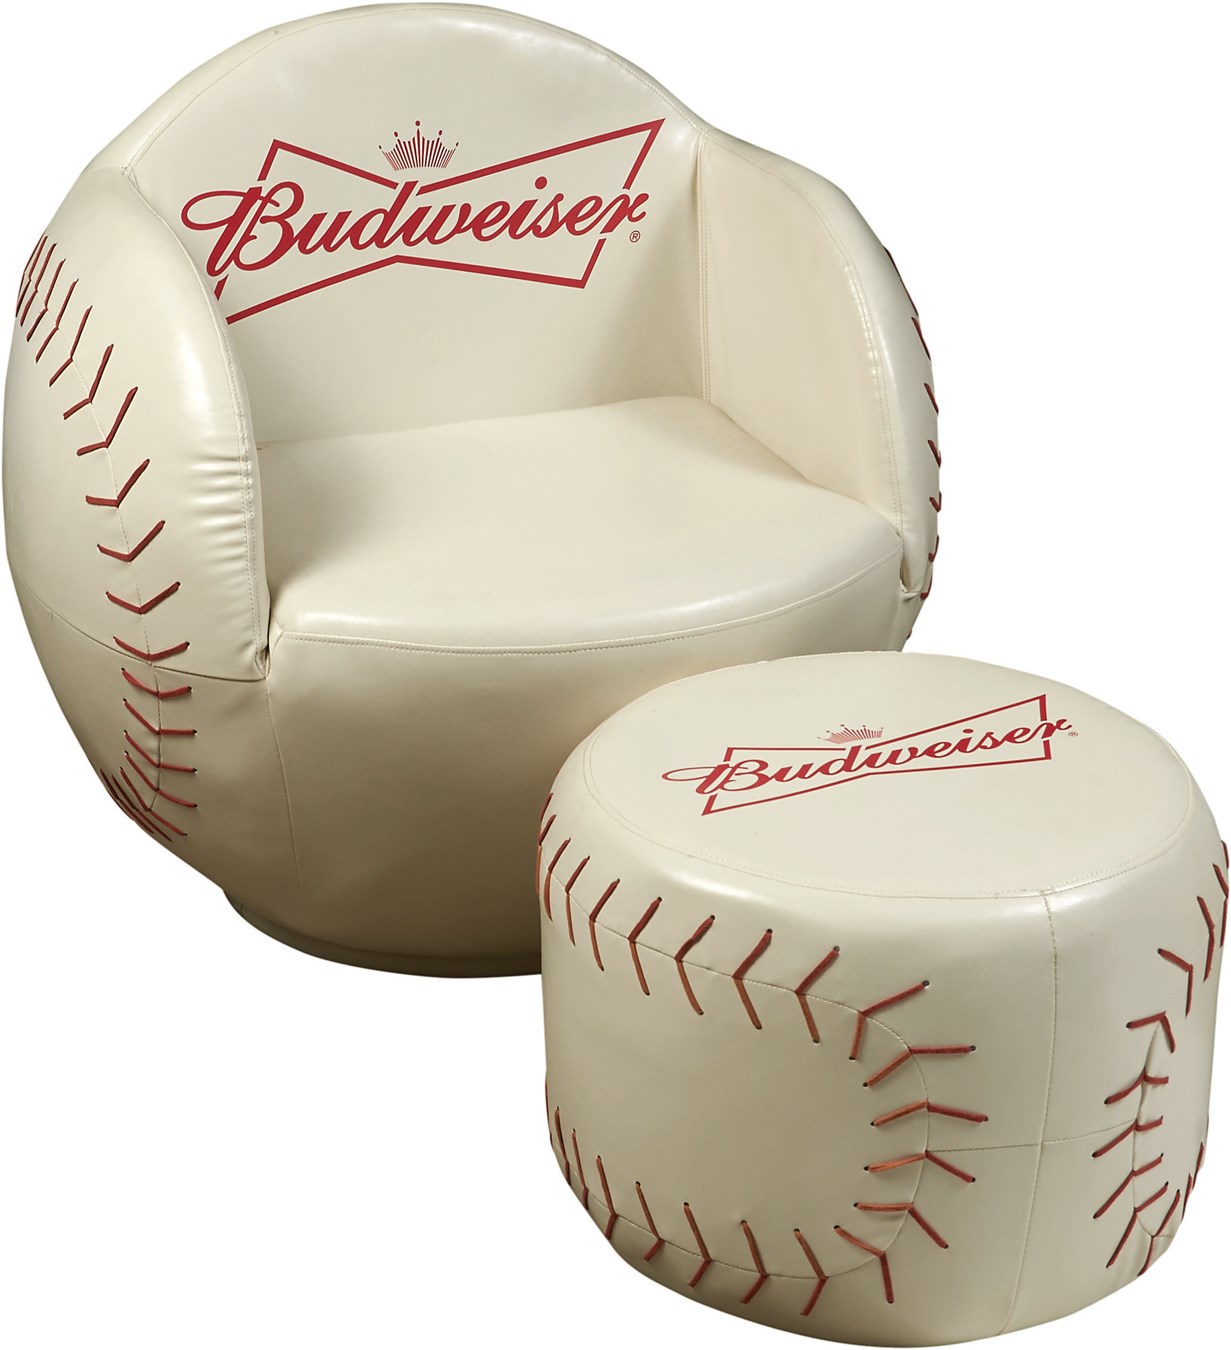 Budweiser Promotional Baseball Chair 